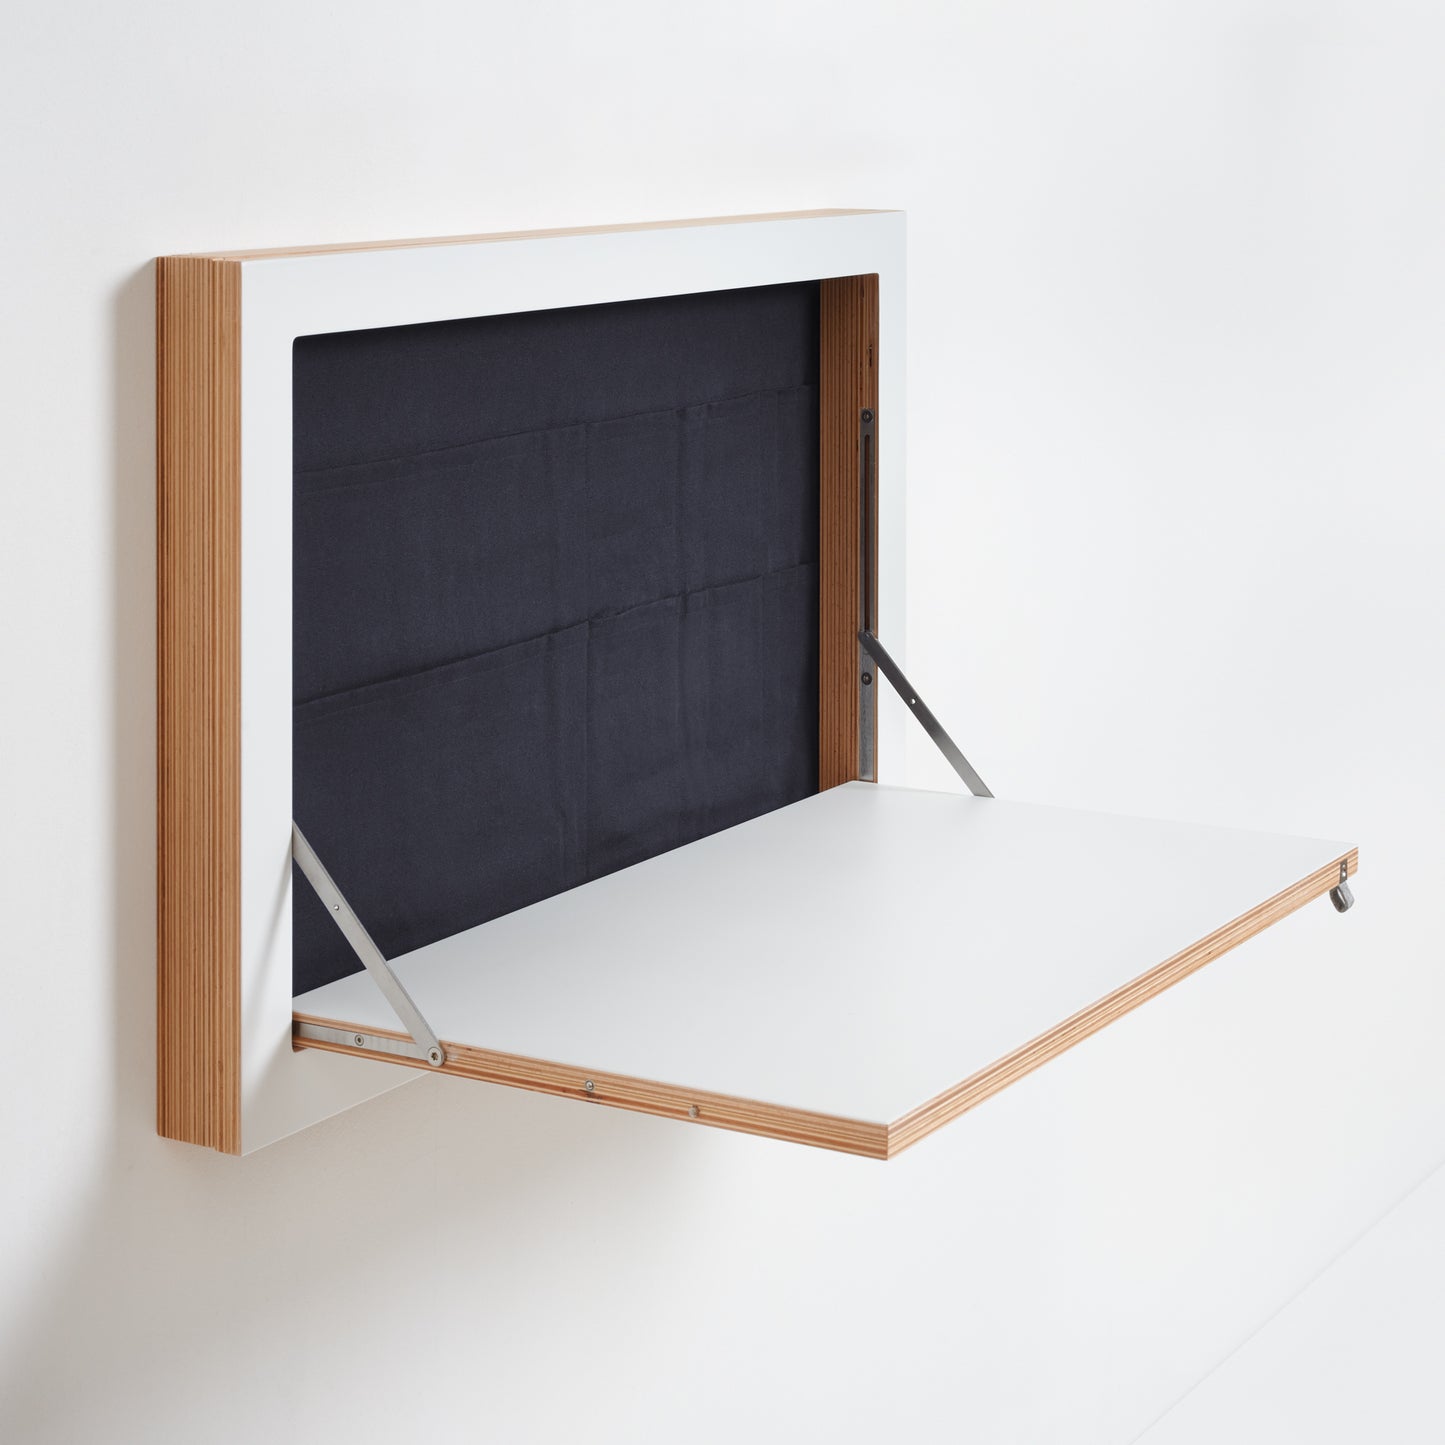 Fläpps wall desk, wand sekretär, functional and modular design, Nave shop, online concept store